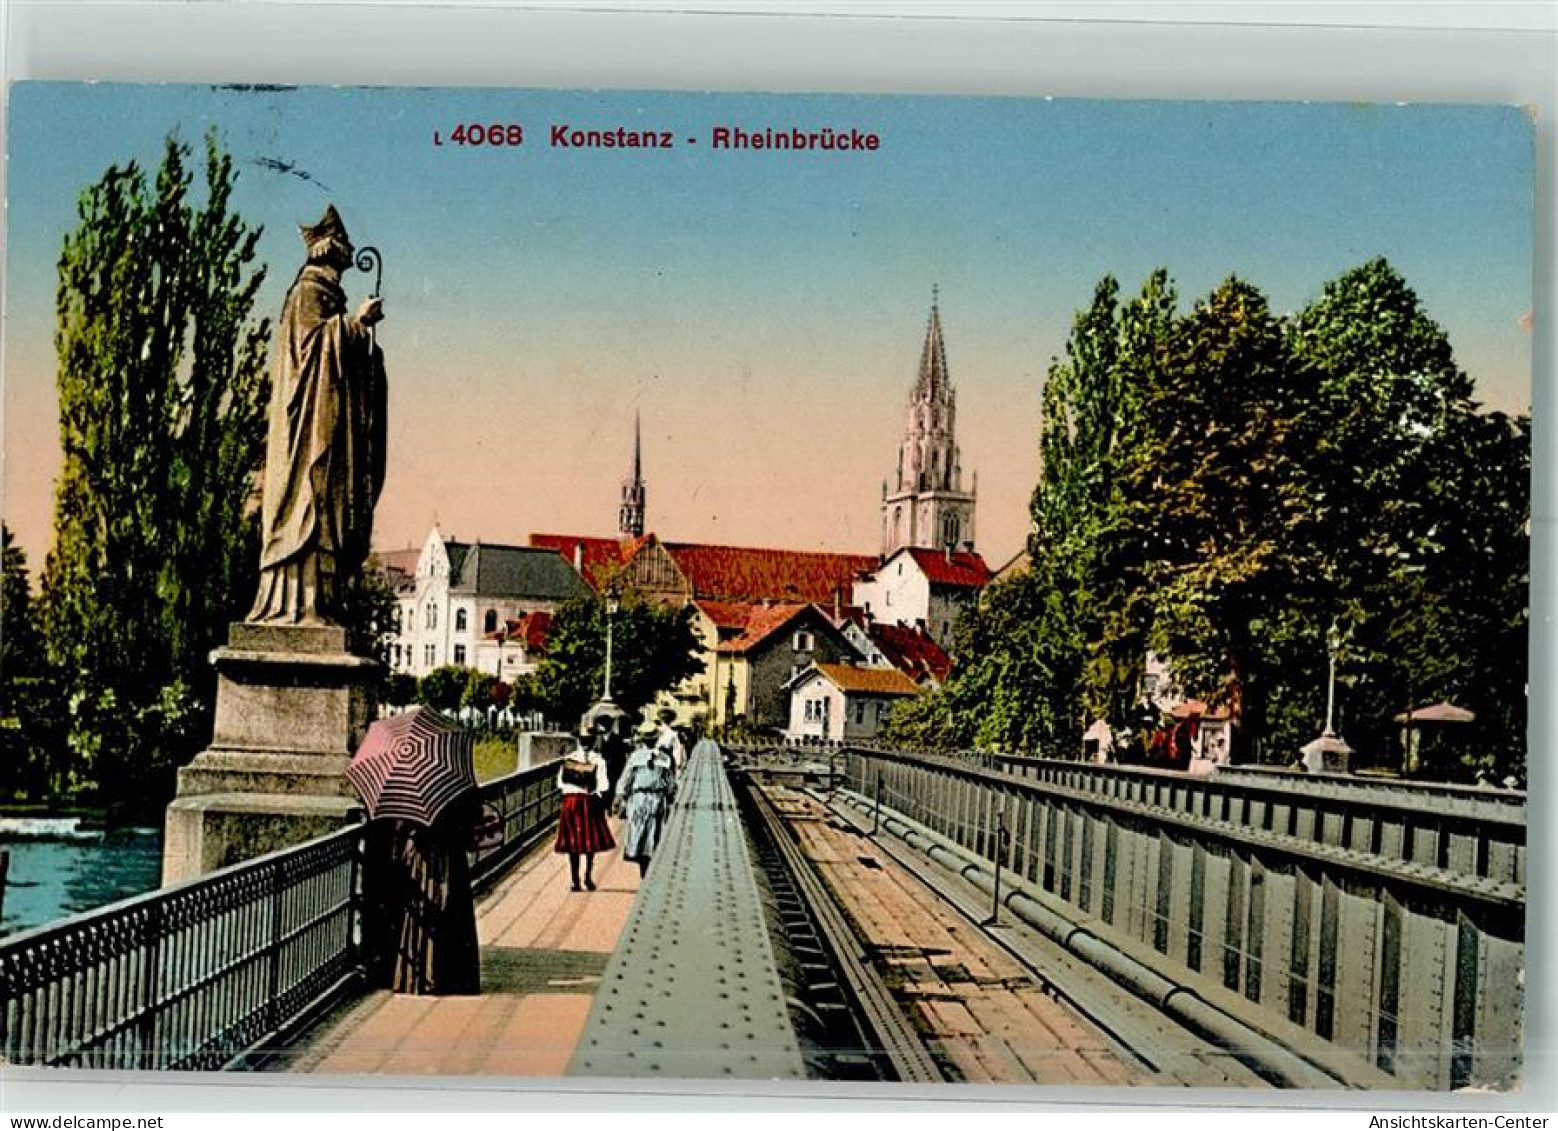 39726706 - Konstanz - Konstanz